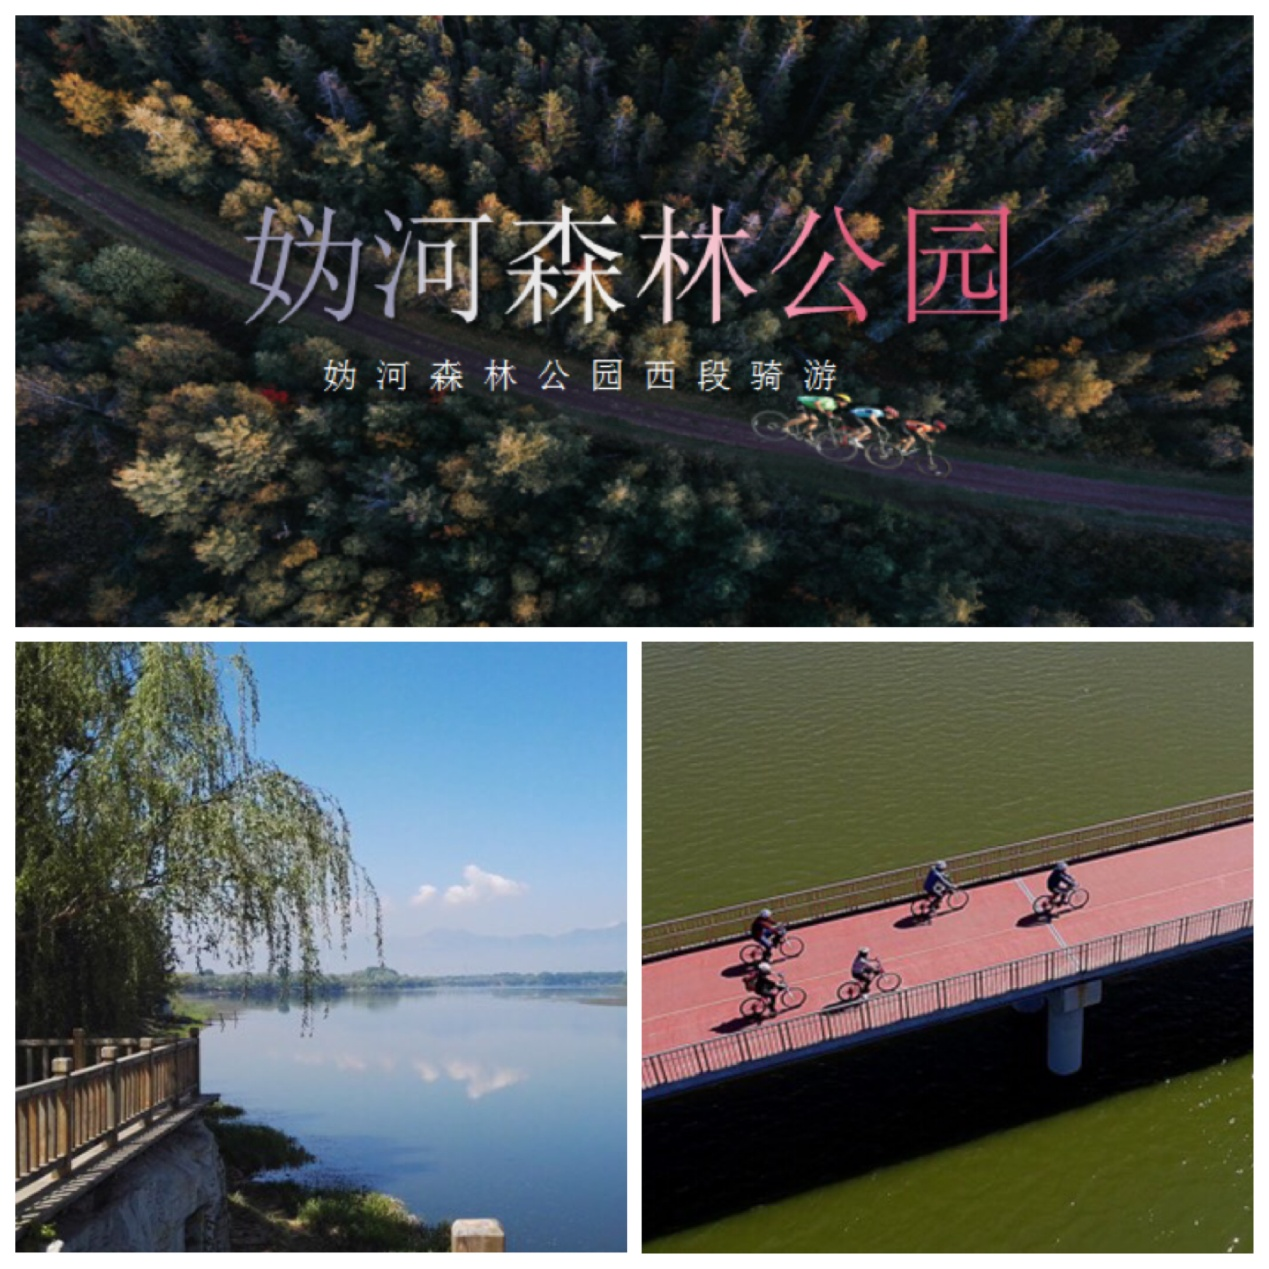 清凉怡夏妫河森林公园骑行皮划艇一日游(15km妫河森林